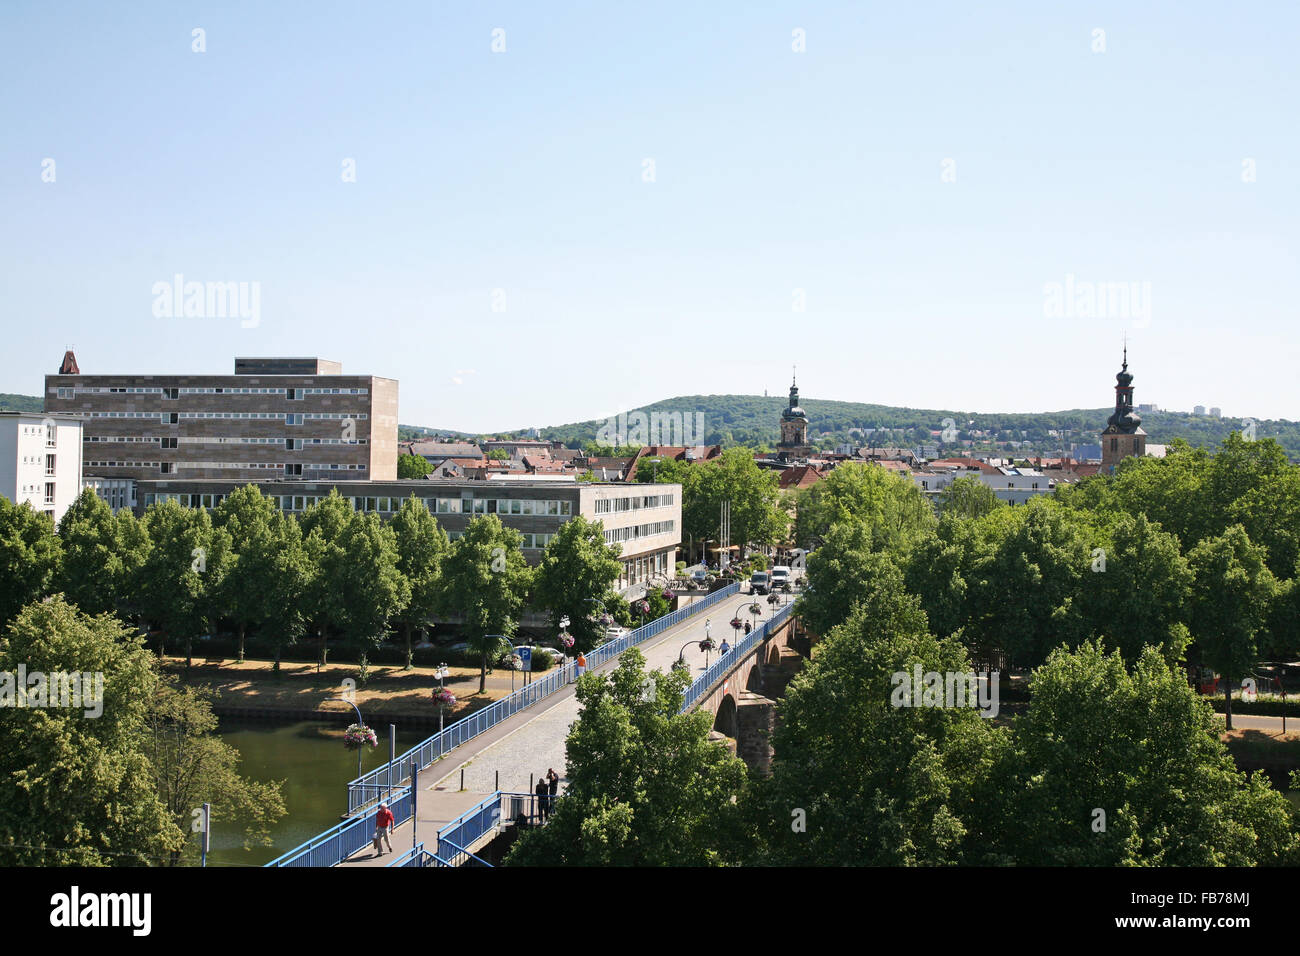 Panorama of Saarbrücken Stock Photo